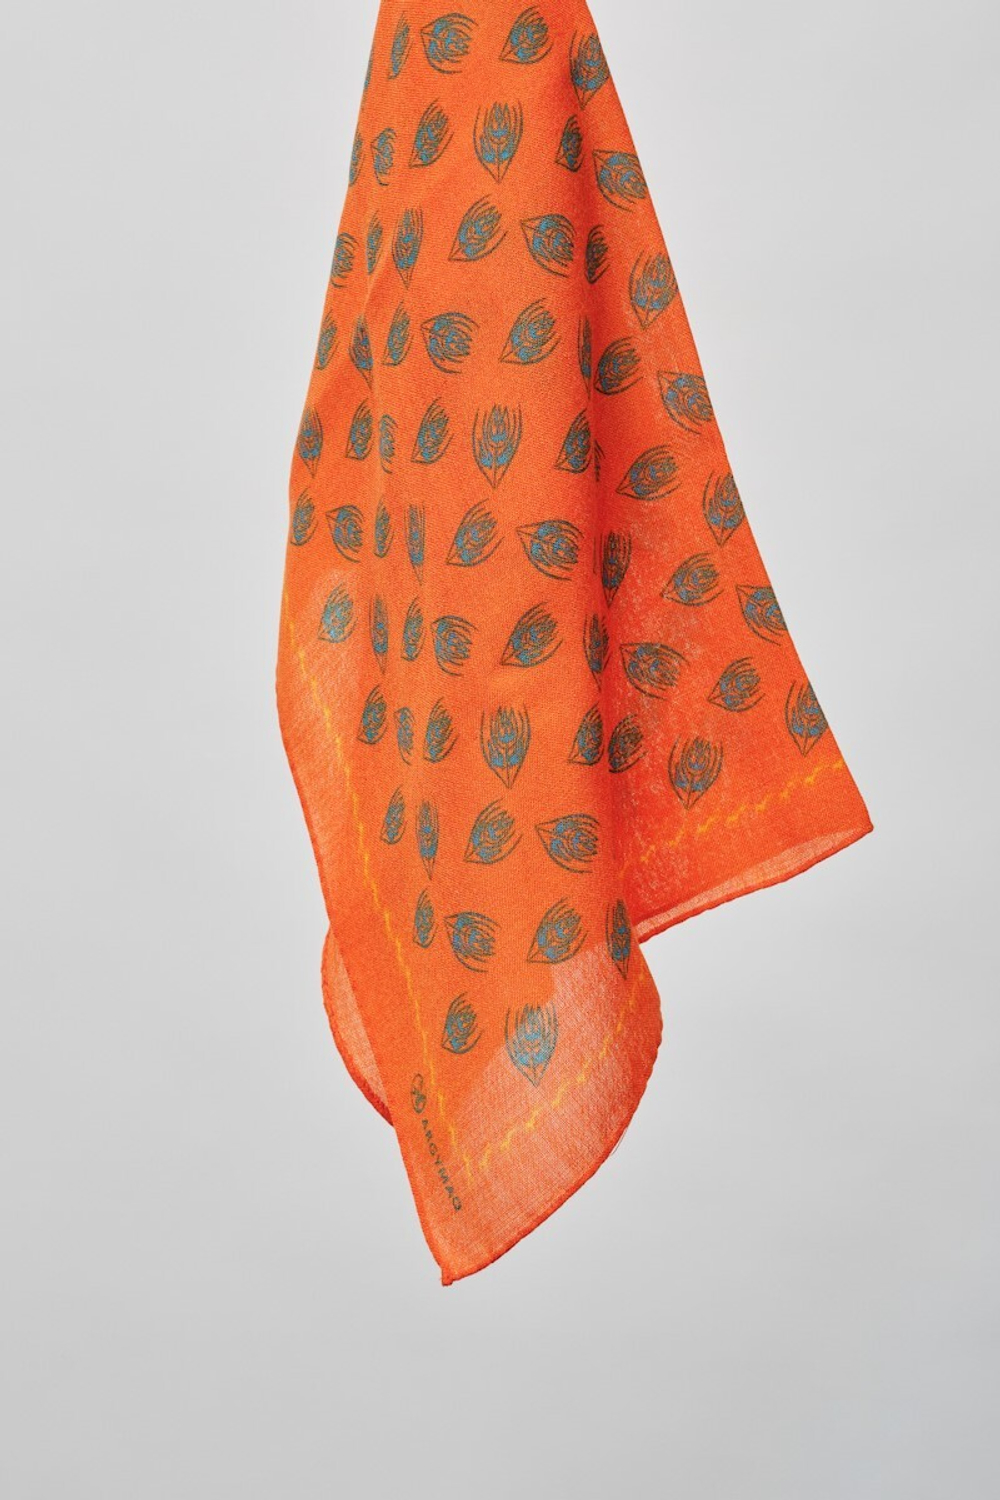 Шерстяной платок Ласточка и тюльпан ORANGE 70×70